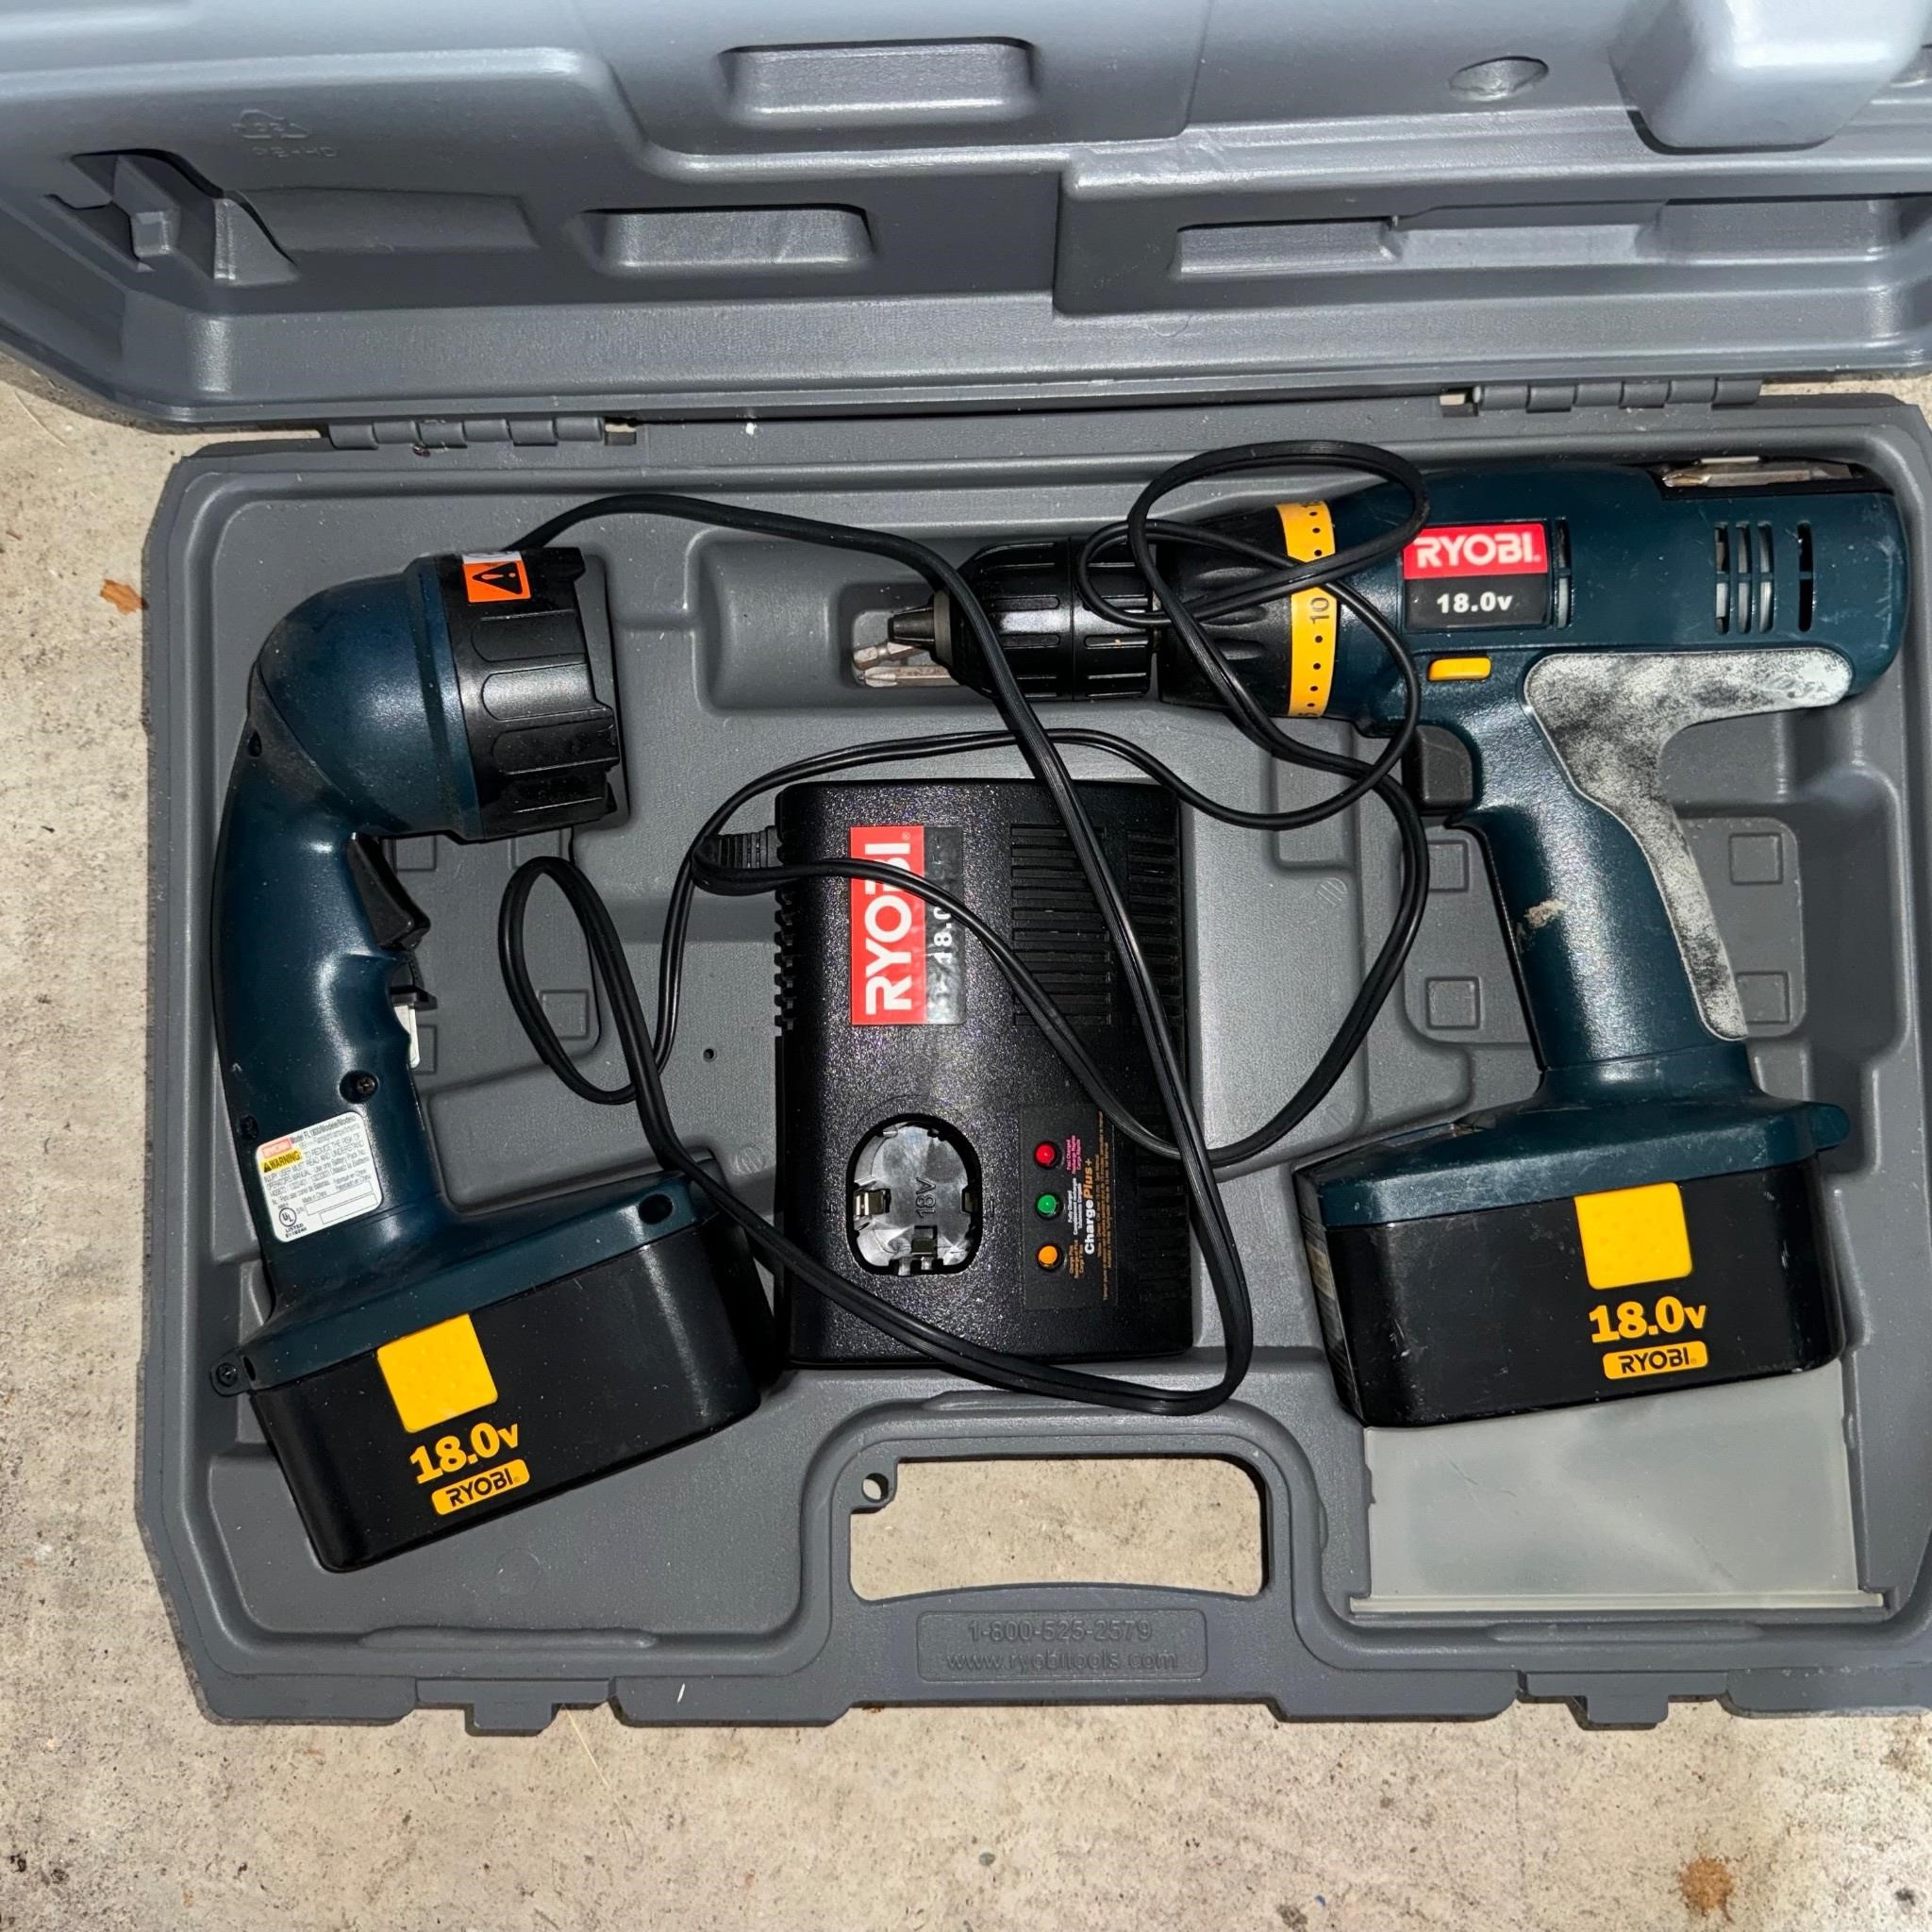 Ryobi Drill and flashlight kit.